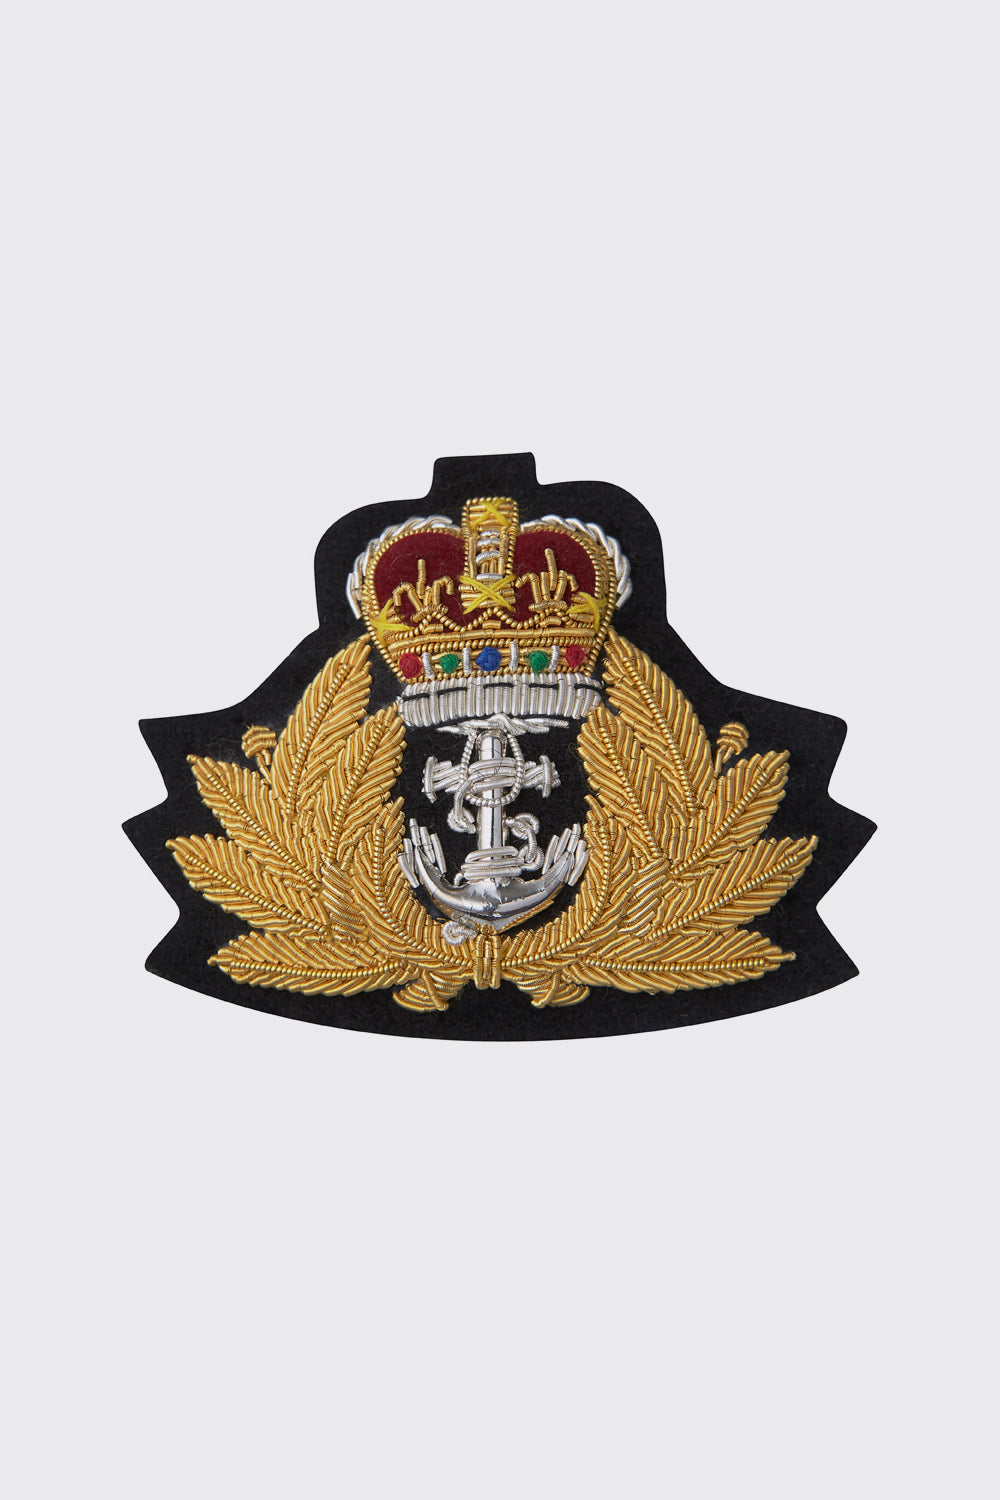 Royal Navy Beret Badge - Navy